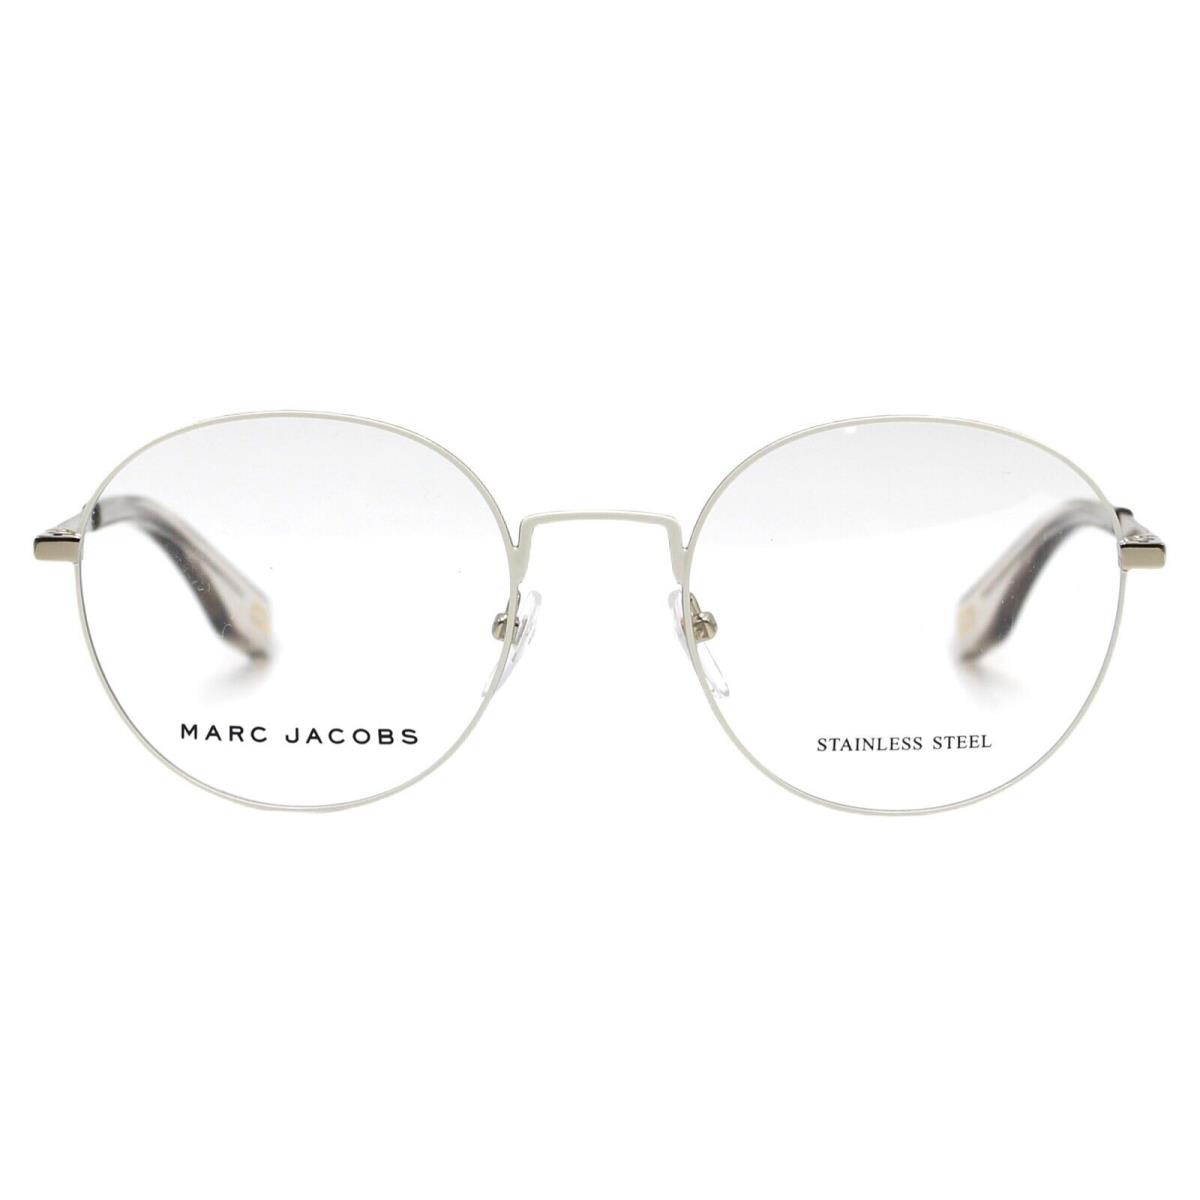 Marc Jacobs eyeglasses Marc - White Gold Frame 1